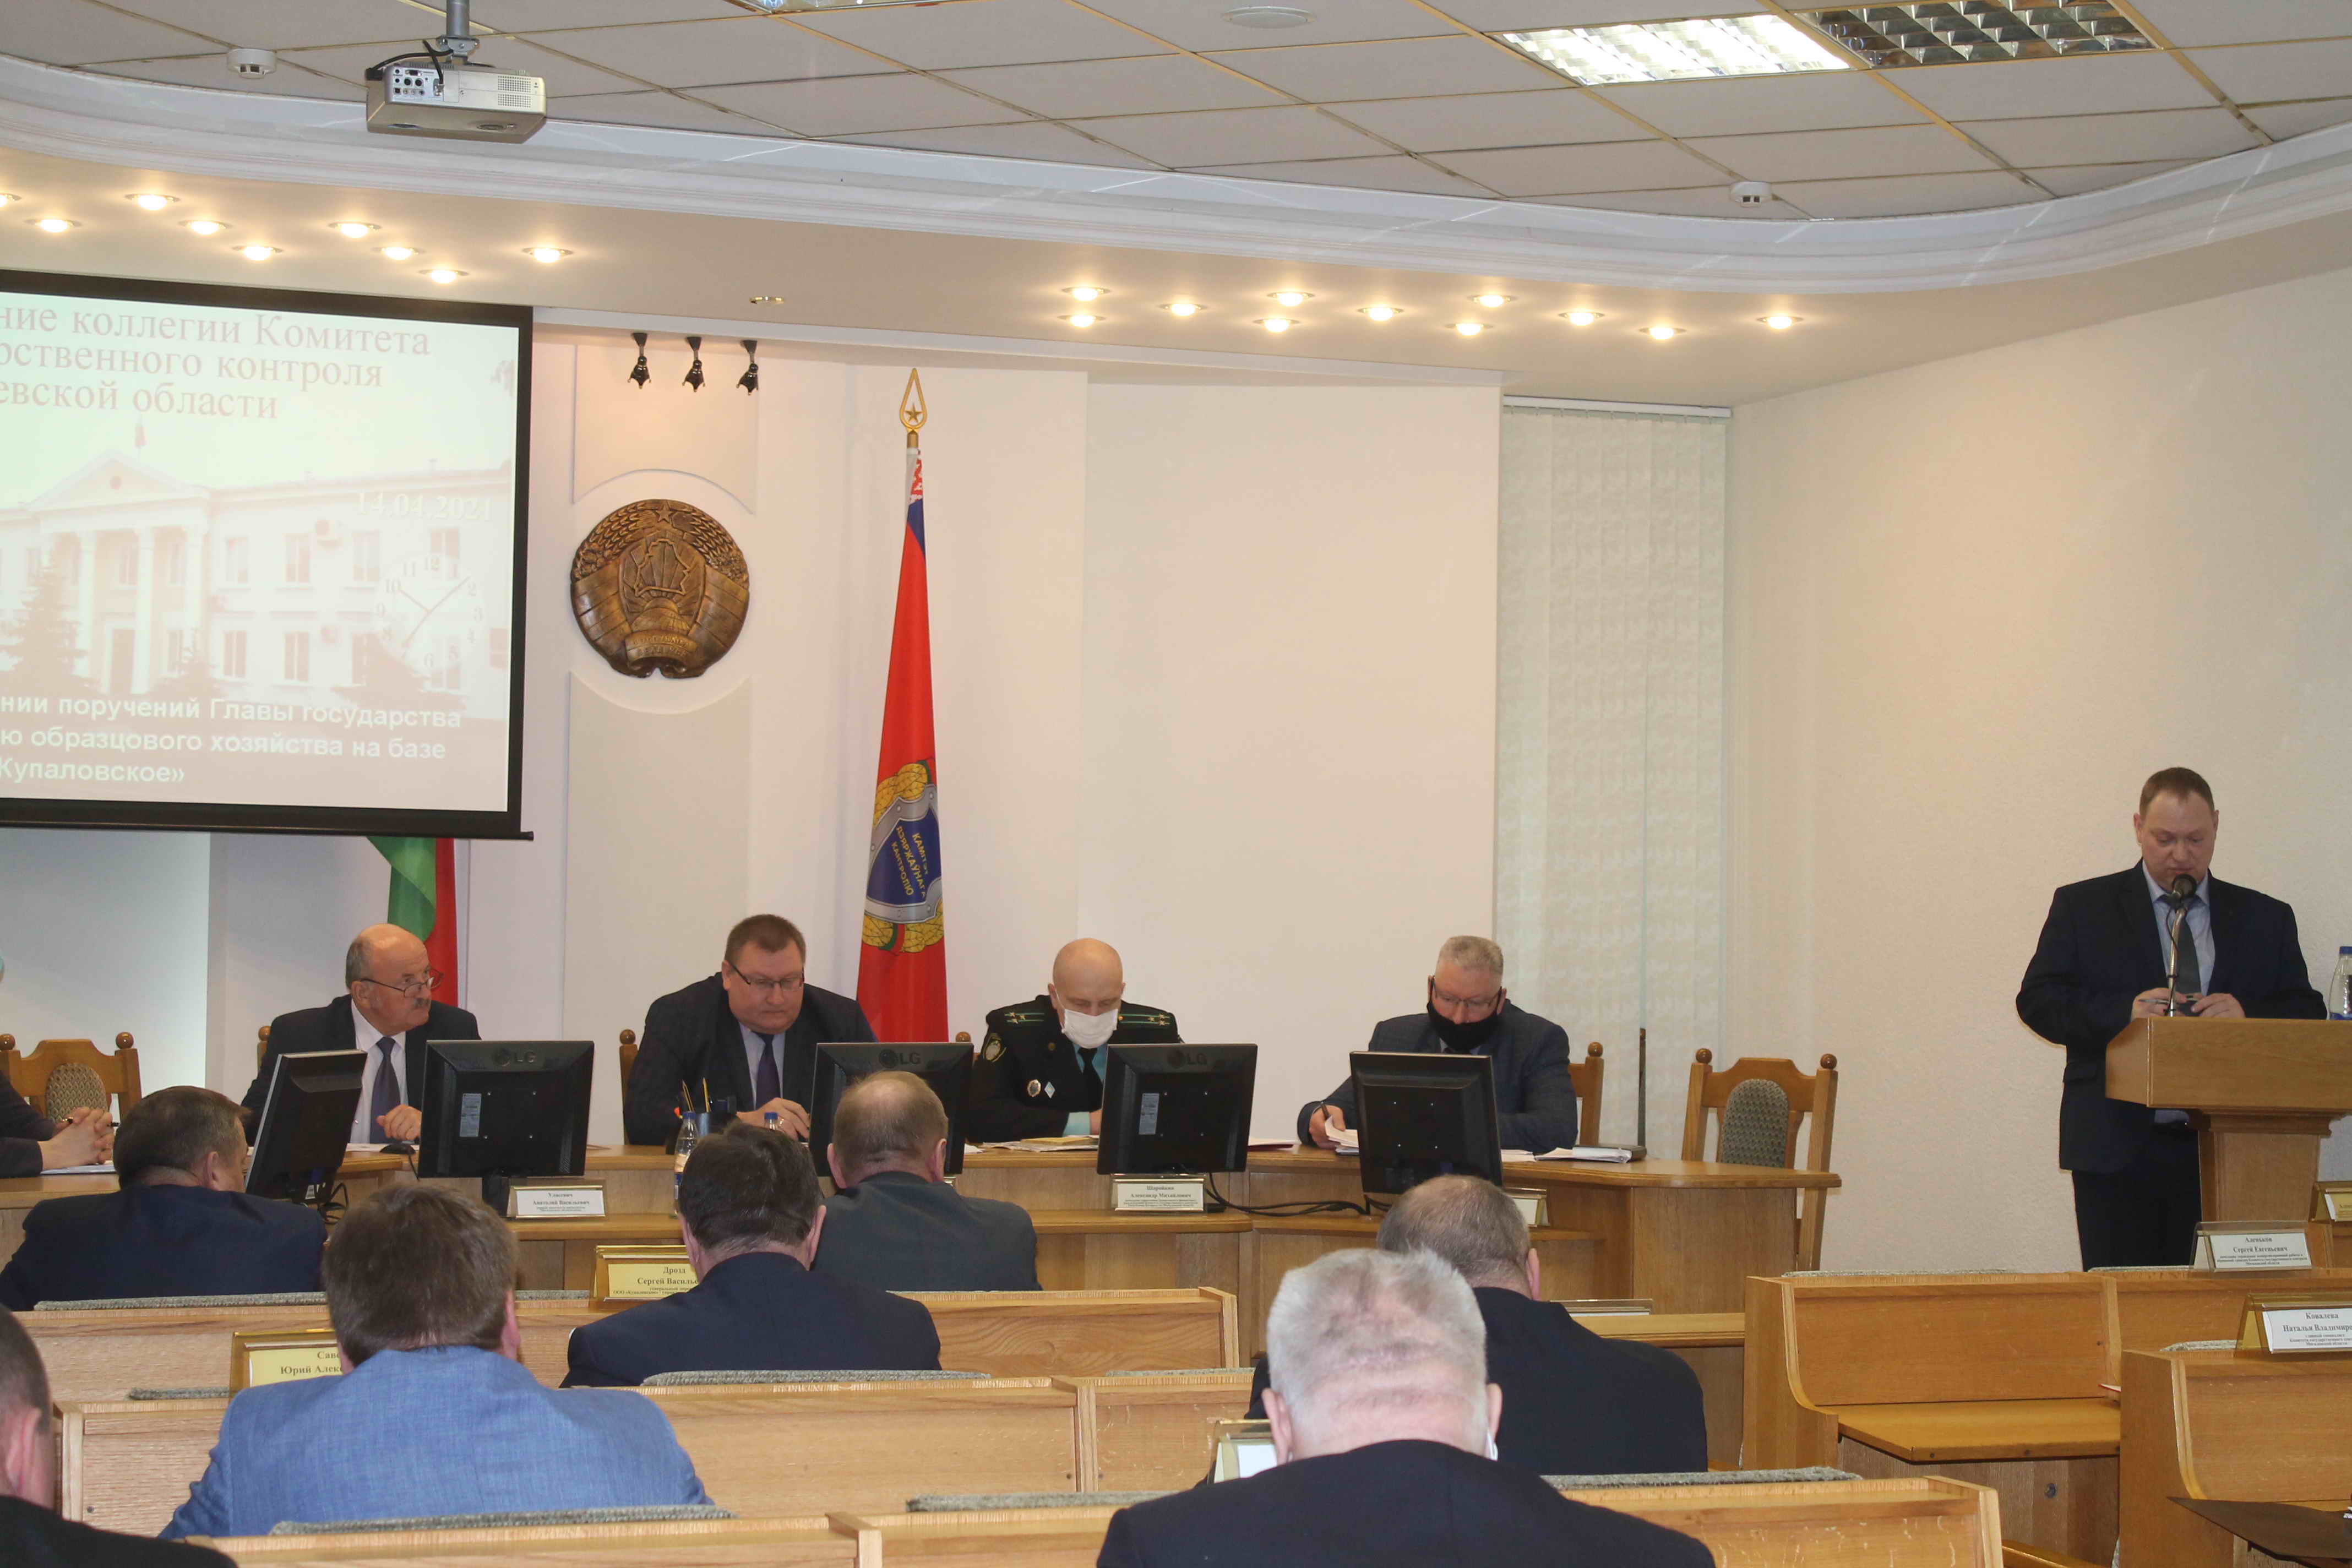 Комитет госконтроля Могилевской области предложил принять меры по кардинальному повышению эффективности деятельности шкловского холдинга «Купаловское».